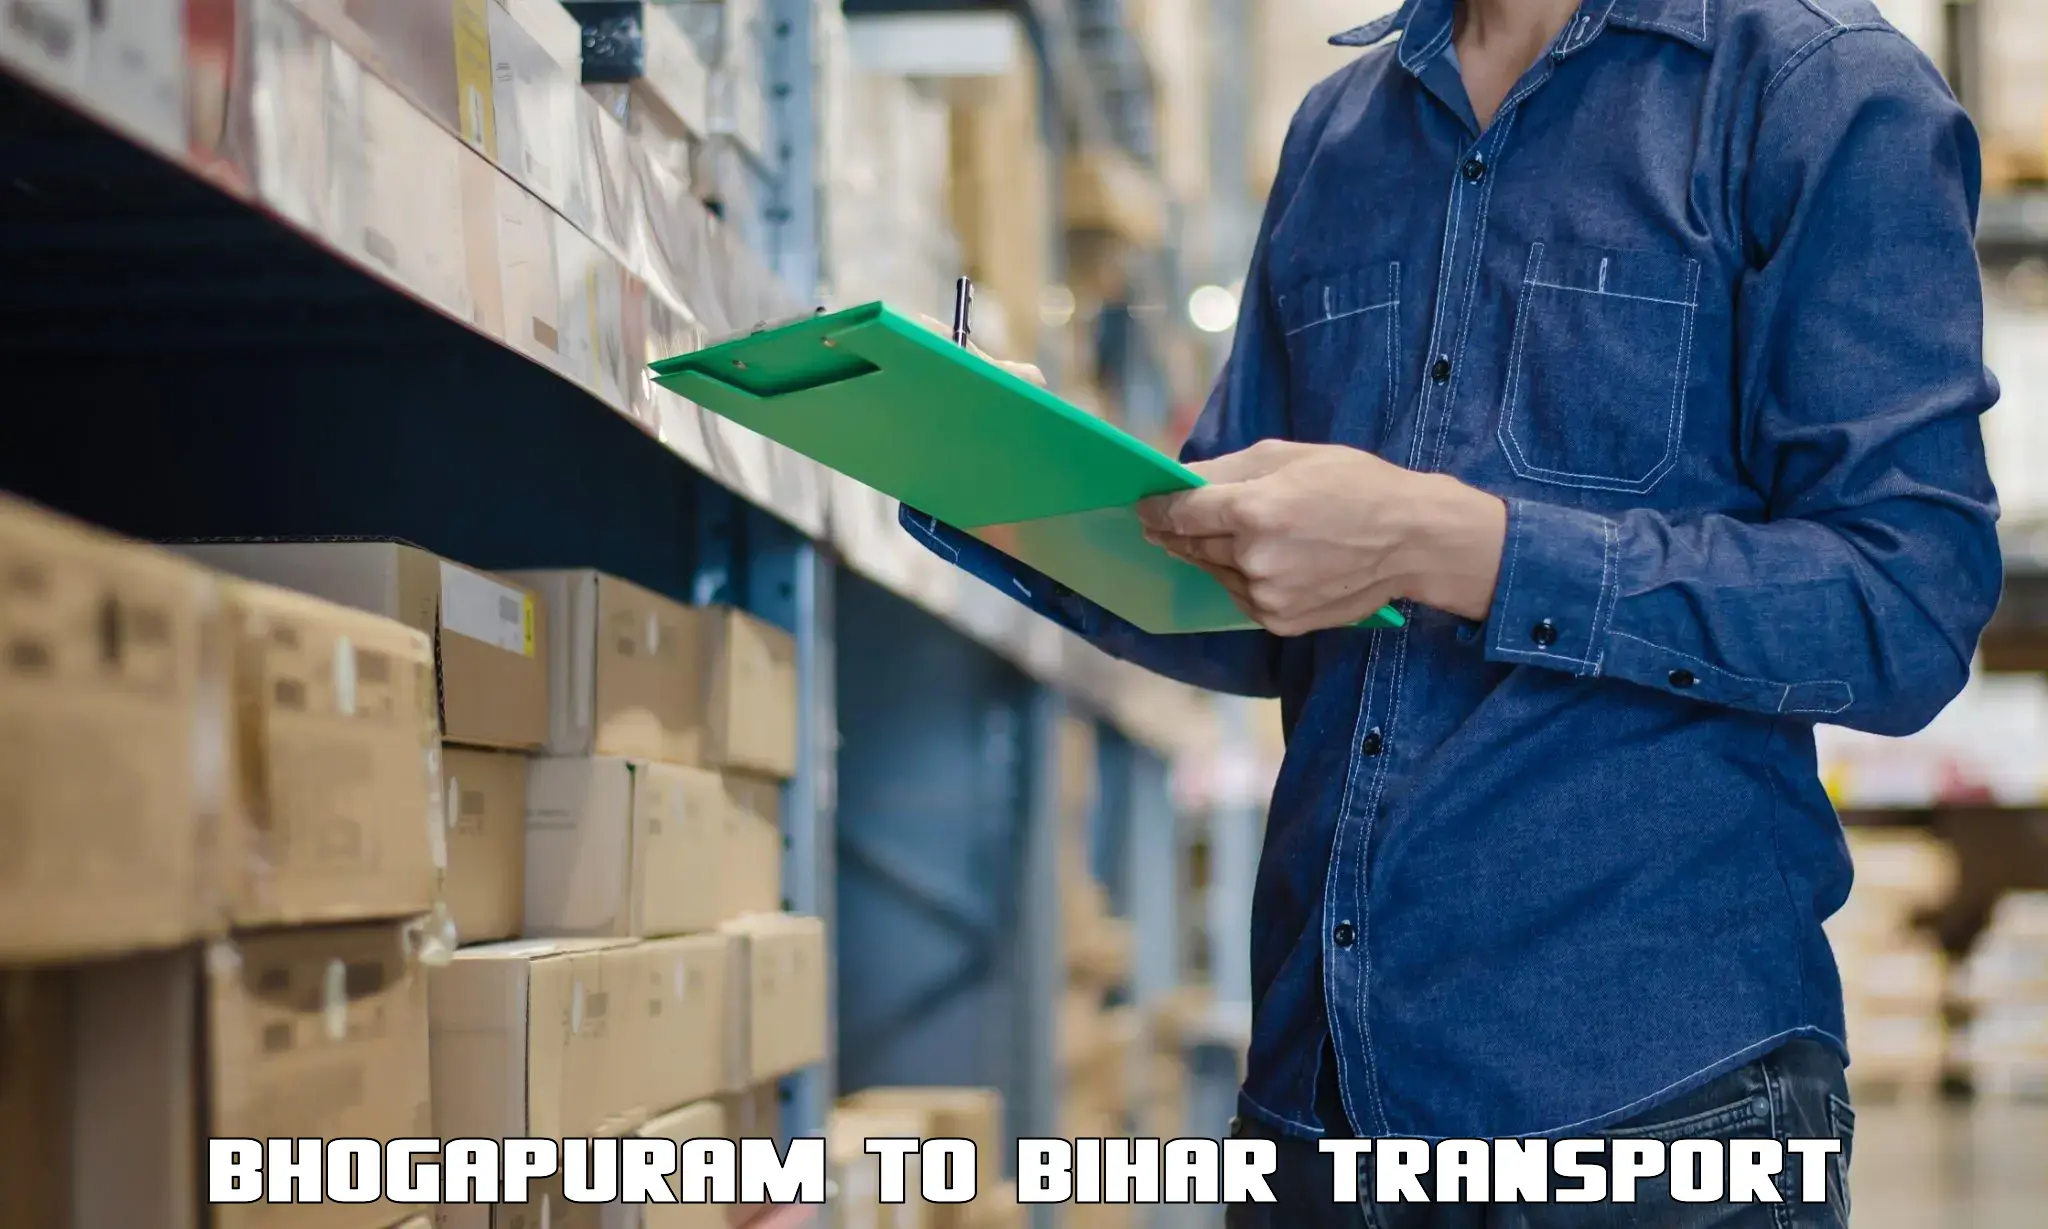 Container transport service Bhogapuram to Bhagalpur